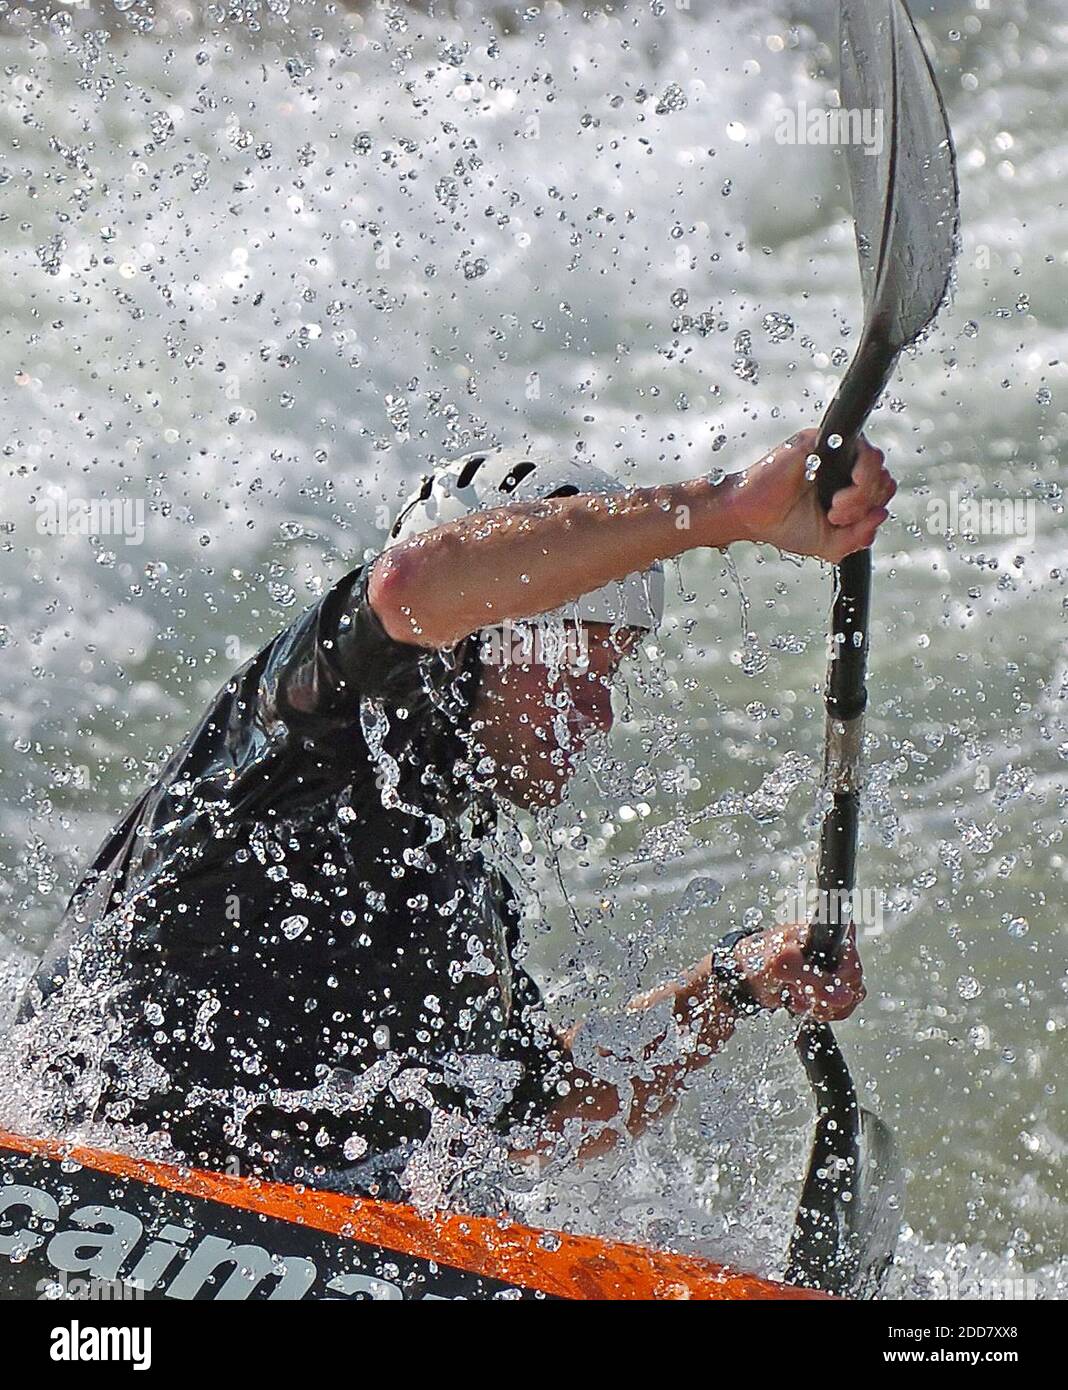 PAS DE FILM, PAS DE VIDÉO, PAS de TV, PAS DE DOCUMENTAIRE - l'eau vole autour d'un kayakiste alors qu'il navigue dans une course d'entraînement au U.S. National Whitewater Center à Charlotte, NC, USA le 24 avril 2008. Vendredi, les meilleurs pagayeurs de slalom en eau vive participeront aux épreuves de l'équipe olympique et aux quatre épreuves de course simultanées. Les meilleurs pagayeurs de slalom des États-Unis, de l'Argentine, du Brésil, du Canada, du Mexique, du Venezuela et de sept autres pays prendront les rapides. Photo de Jeff Siner/Charlotte observer/MCT/Cameleon/ABACAPRESS.COM Banque D'Images